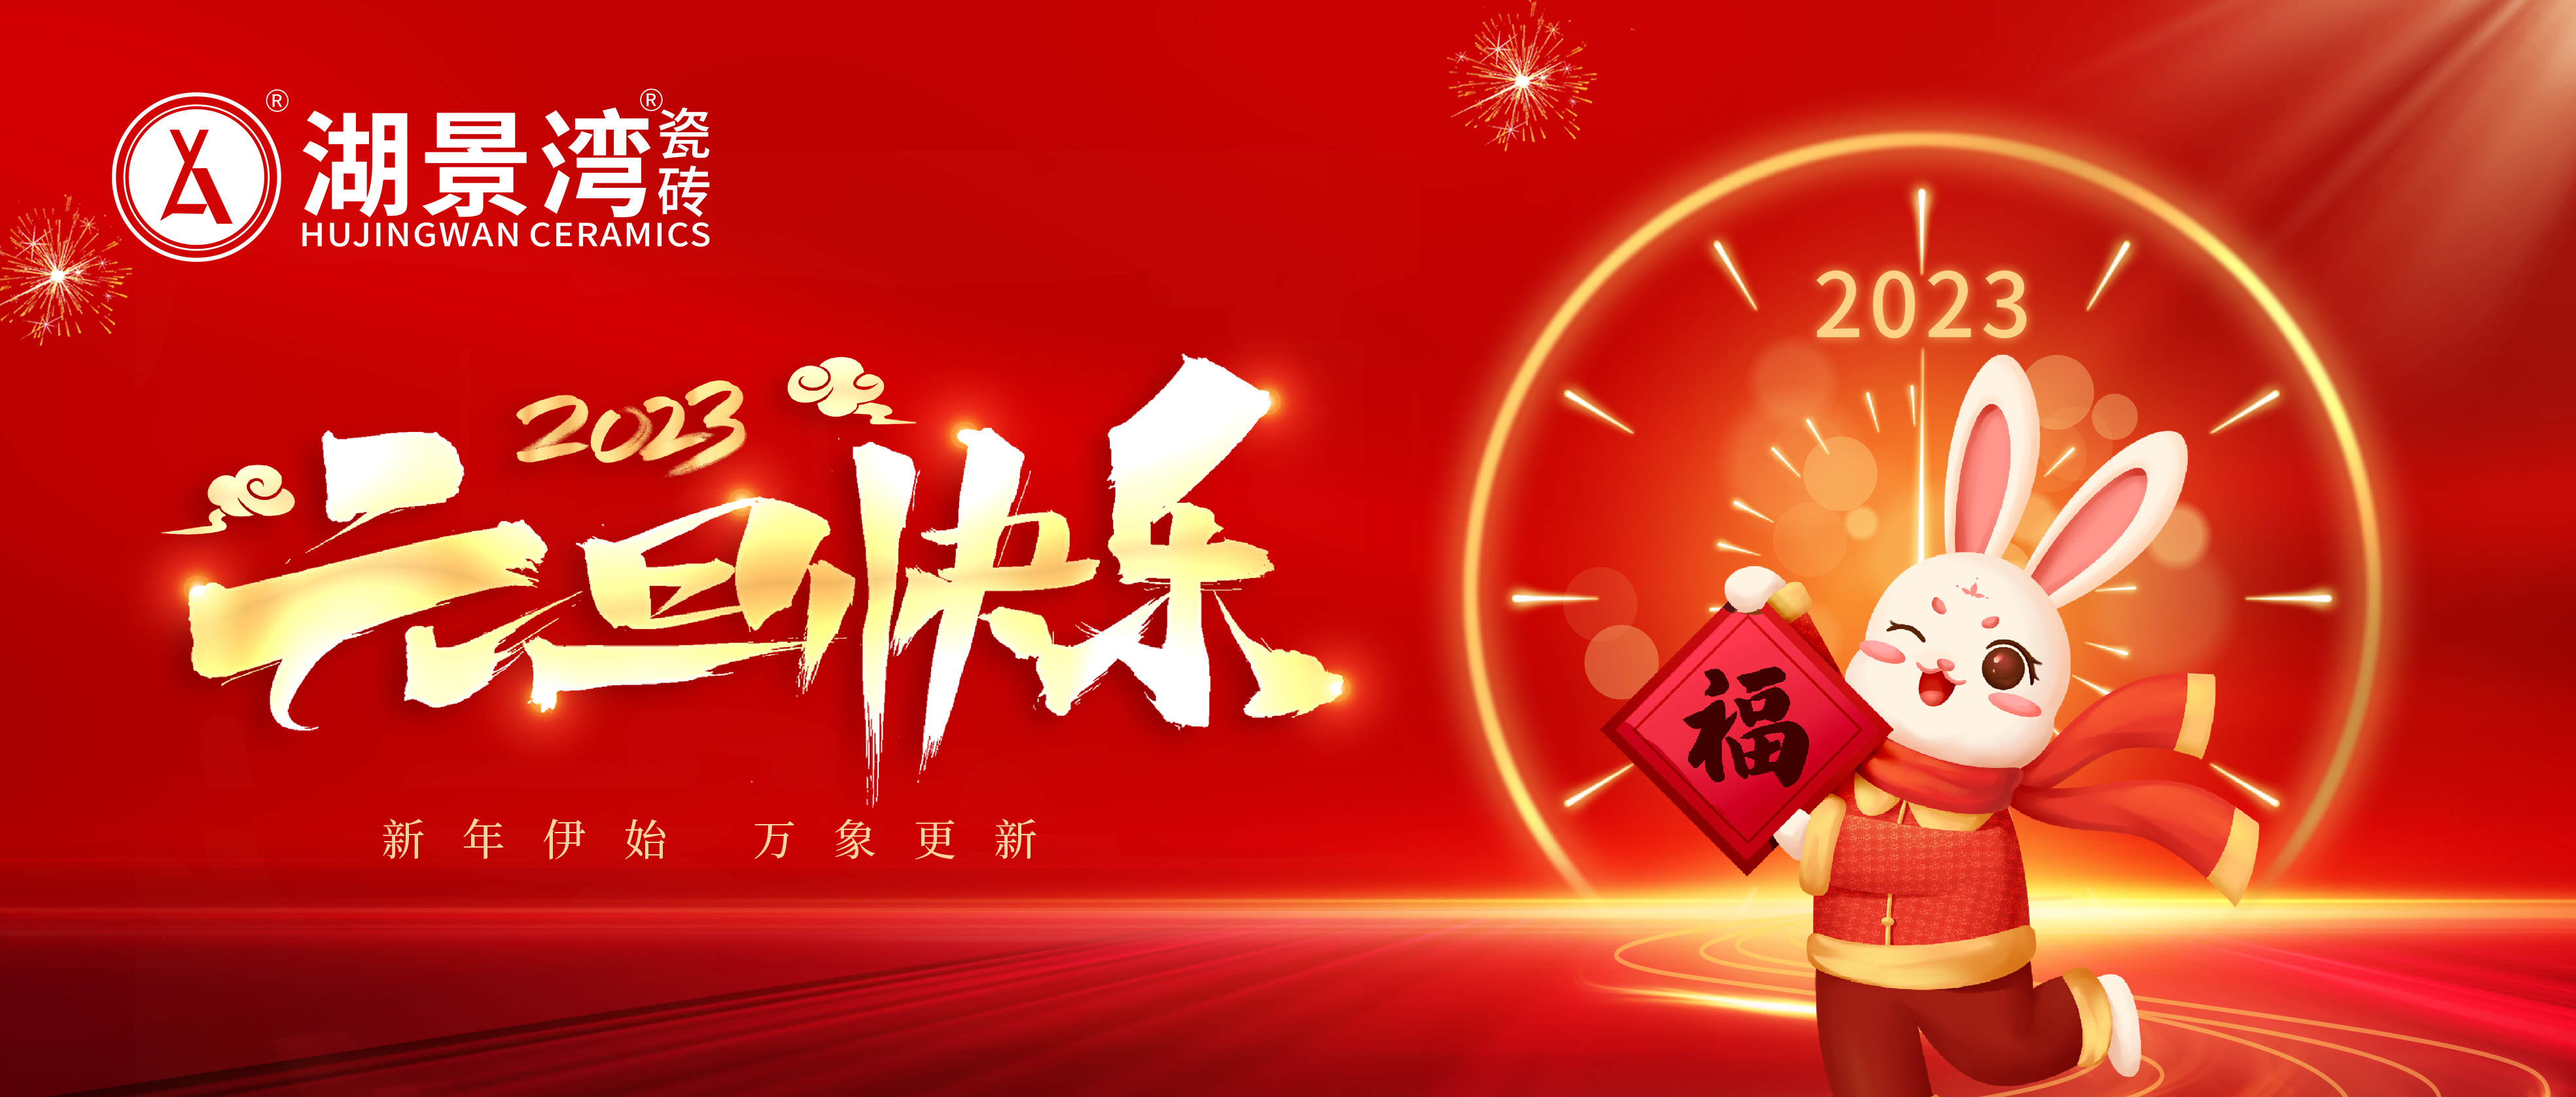 元旦快乐 | 敲响新年的钟声，湖景湾瓷砖祝您节日快乐！